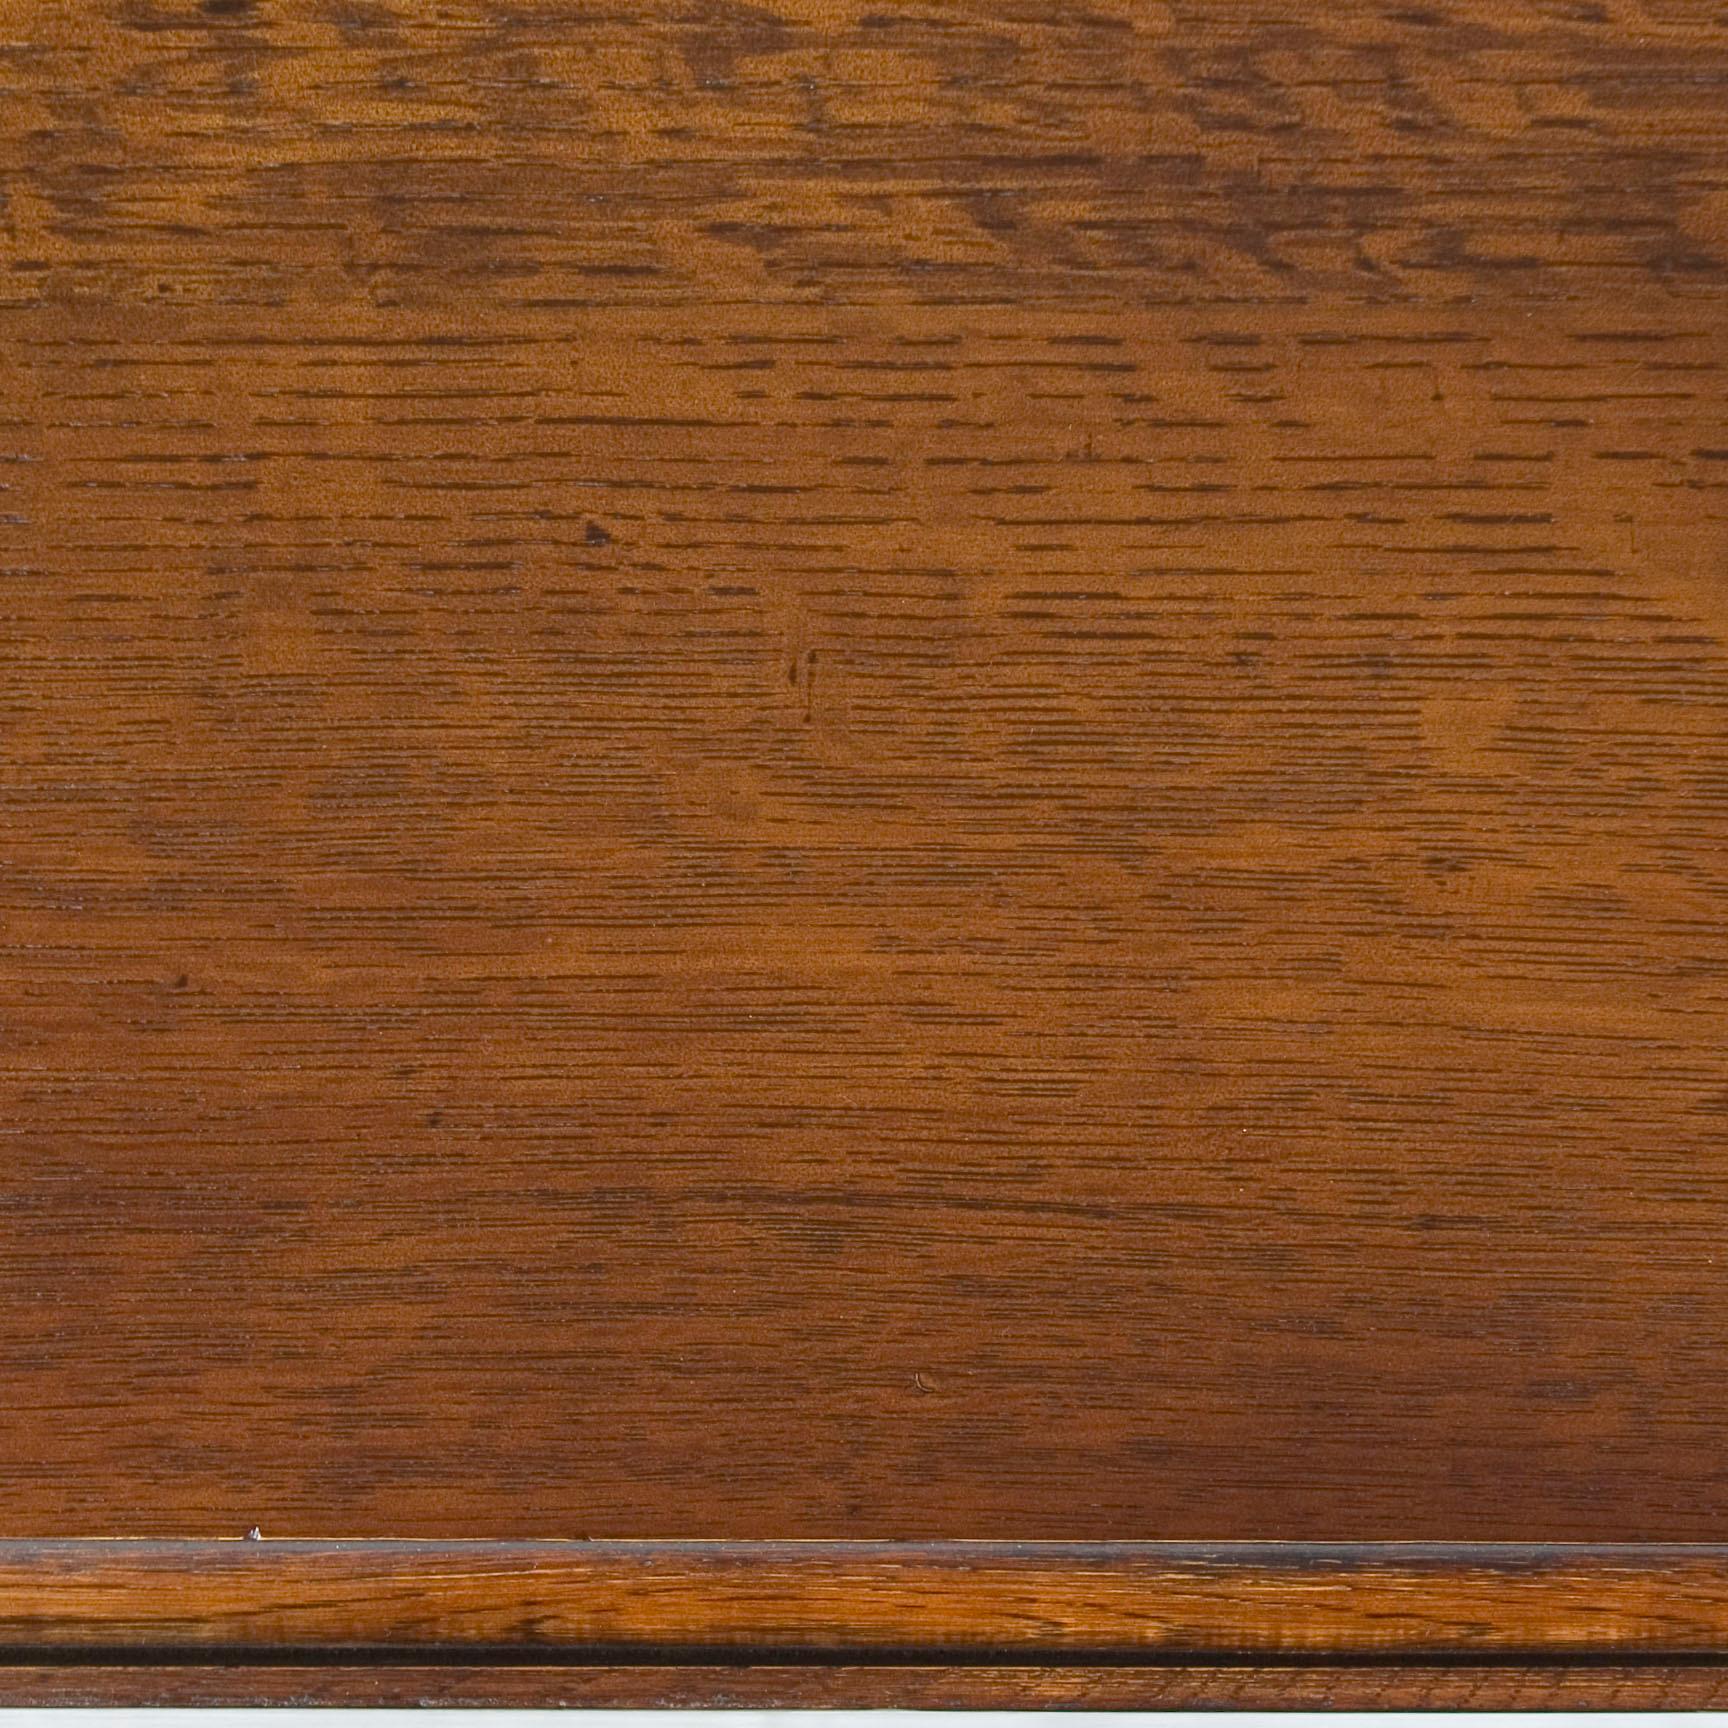 English Oak Barley Twist Gate Leg Drop-Leaf Side Sofa End Table 2